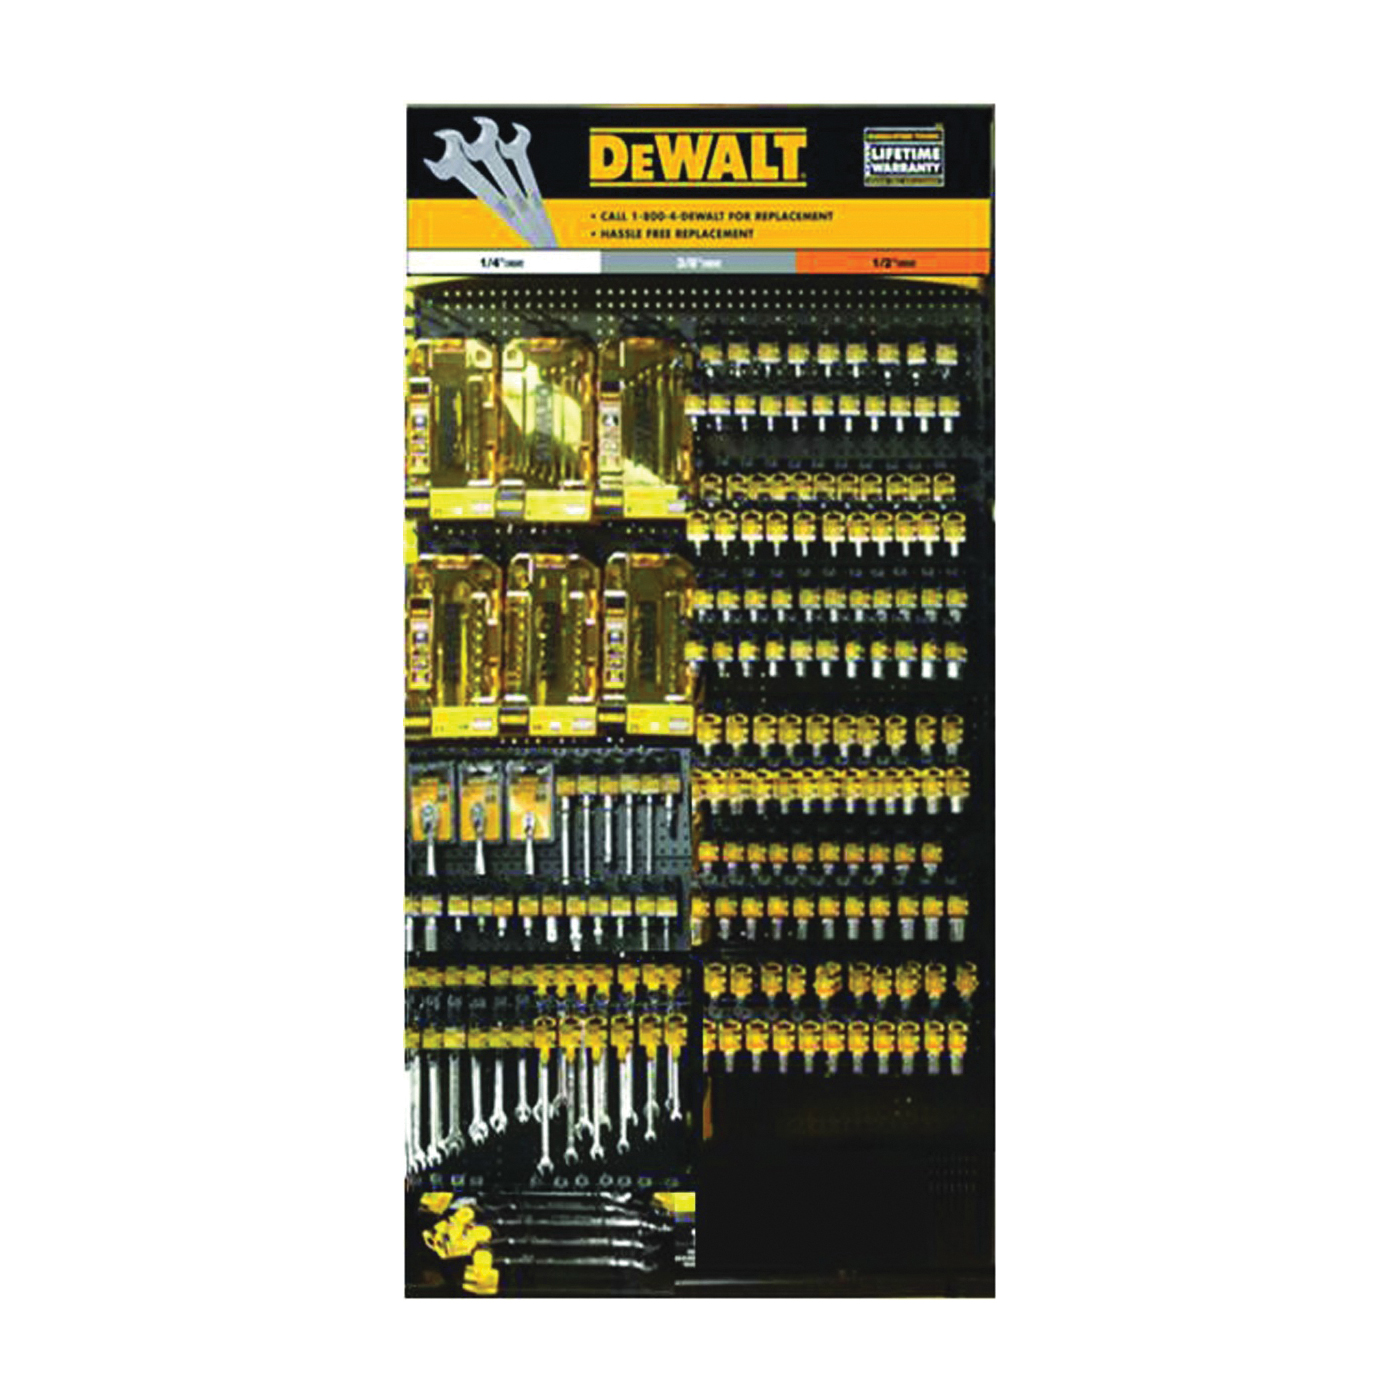 DeWALT DWMT74206 Socket Set, Specifications: 3/8 in Drive Size